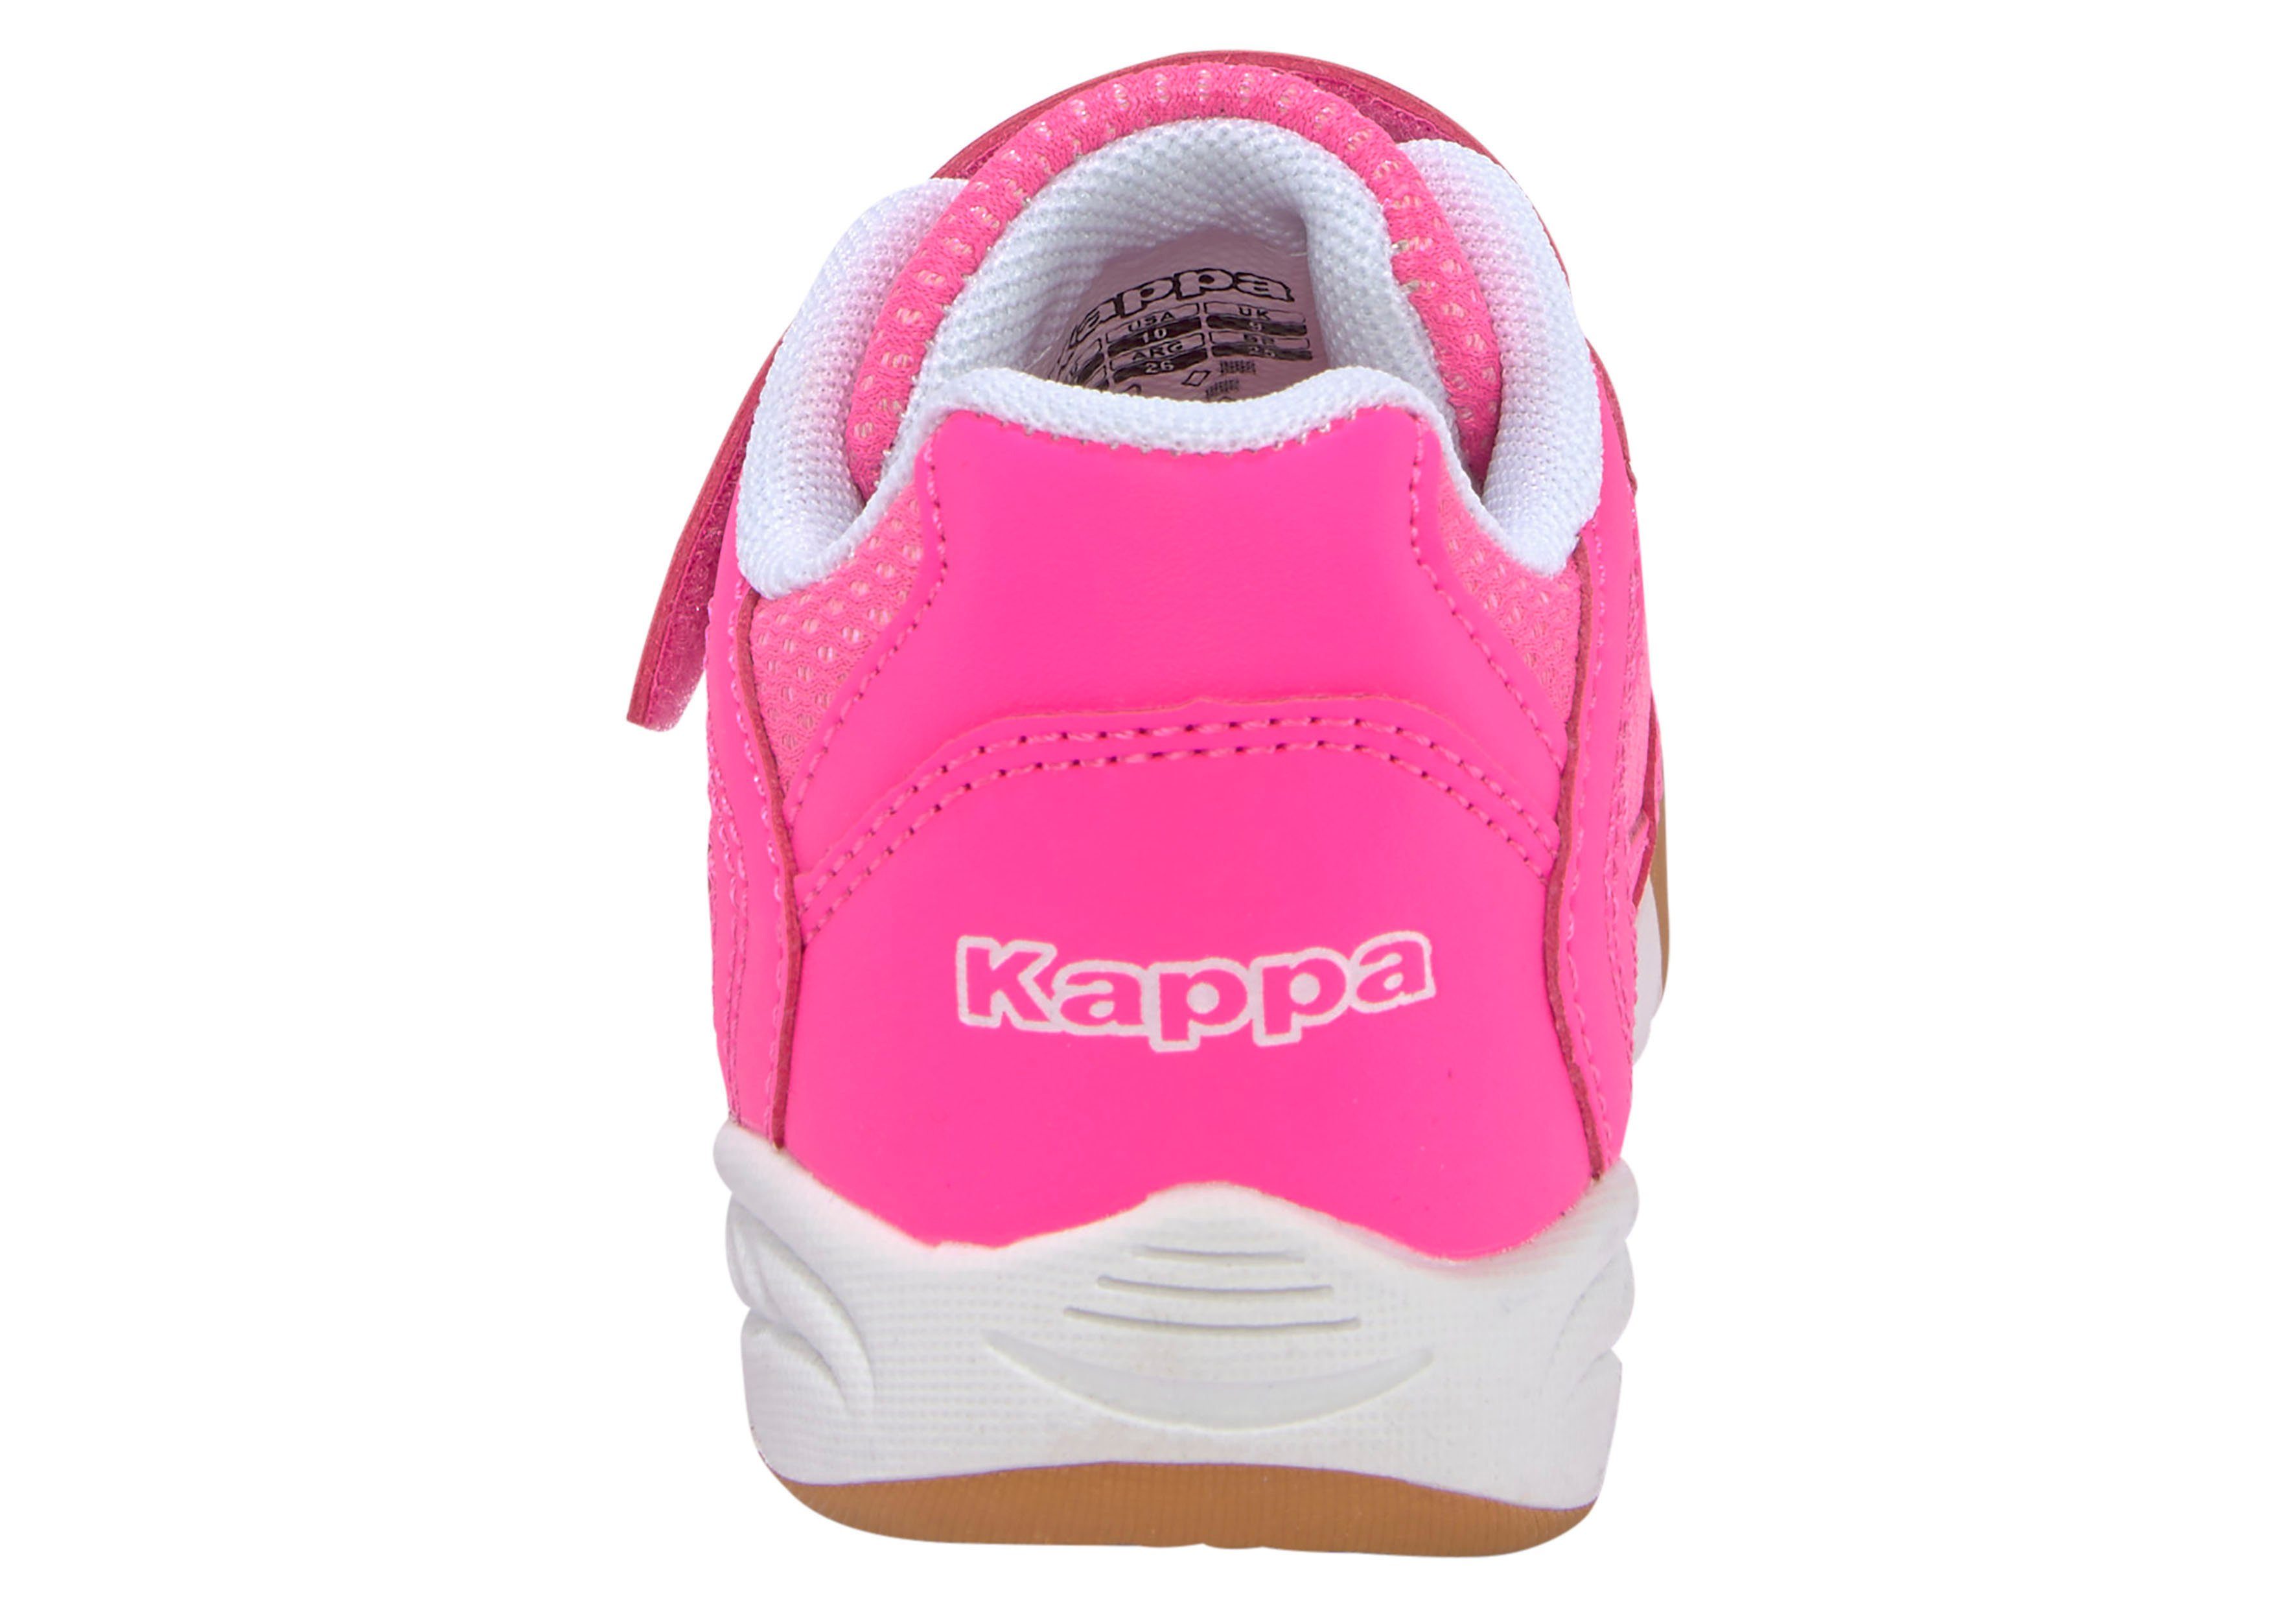 Hallenschuh pink Kappa